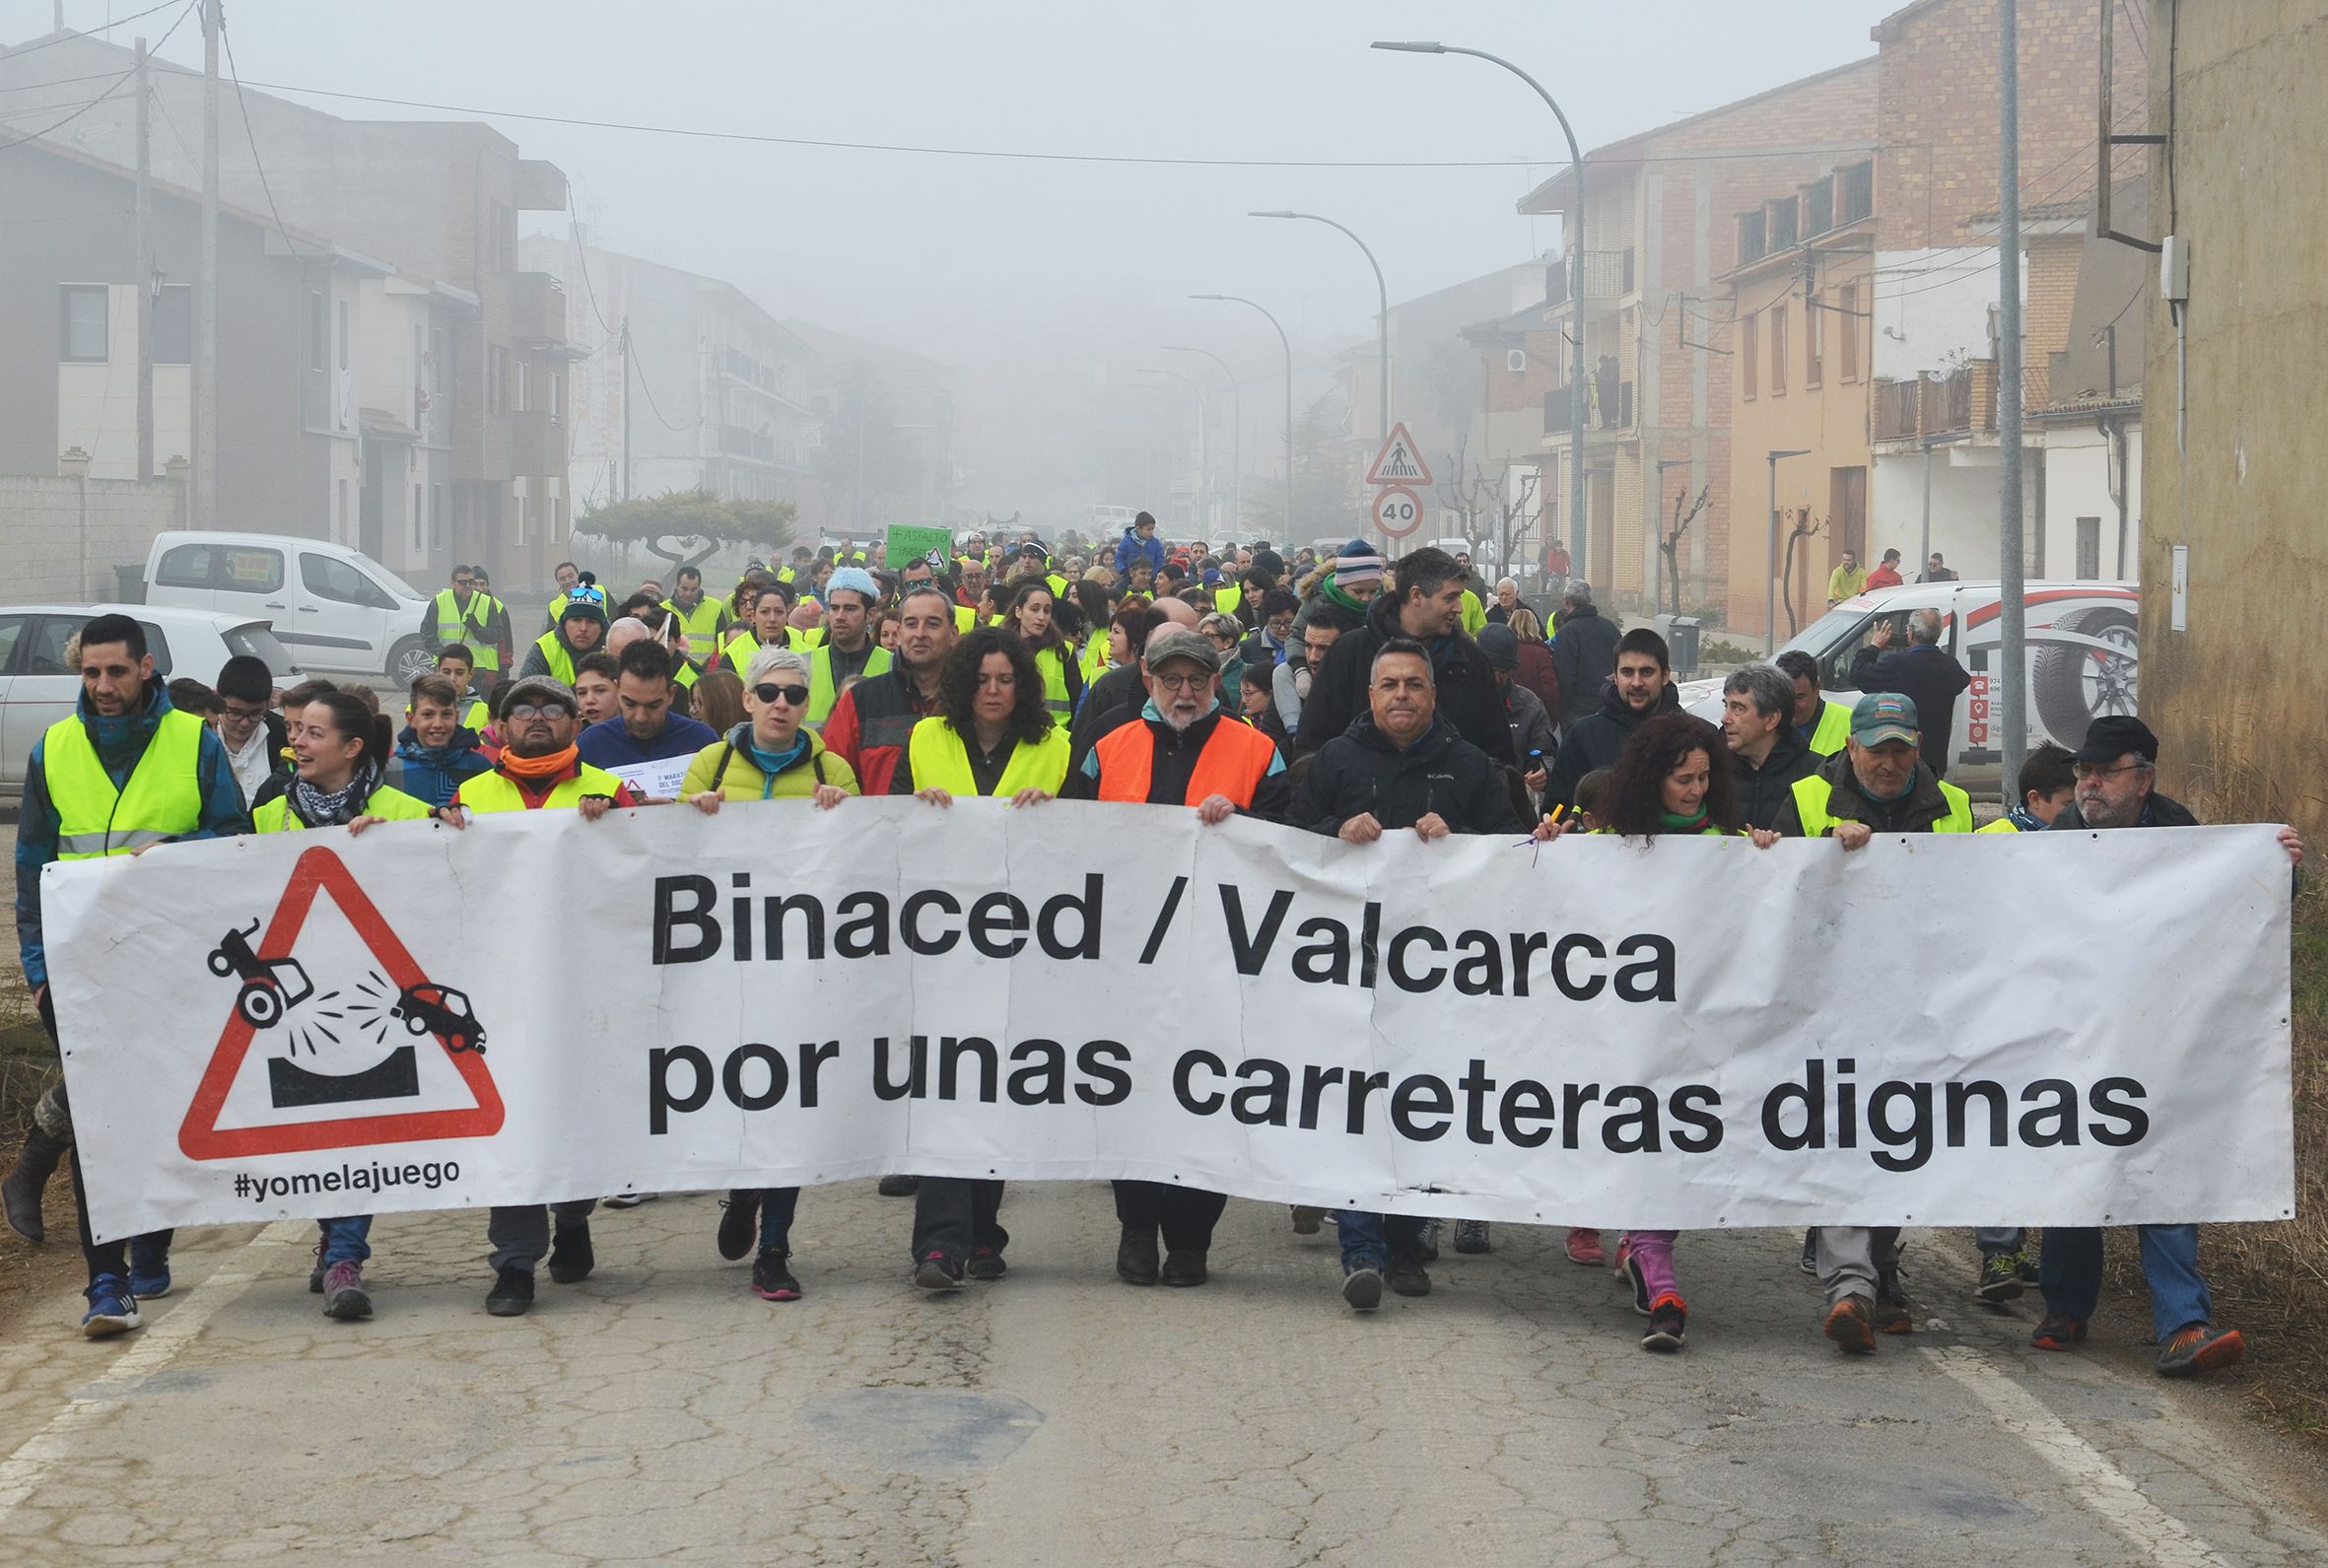 Binaced y Valcarca reivindican unas carreteras dignas